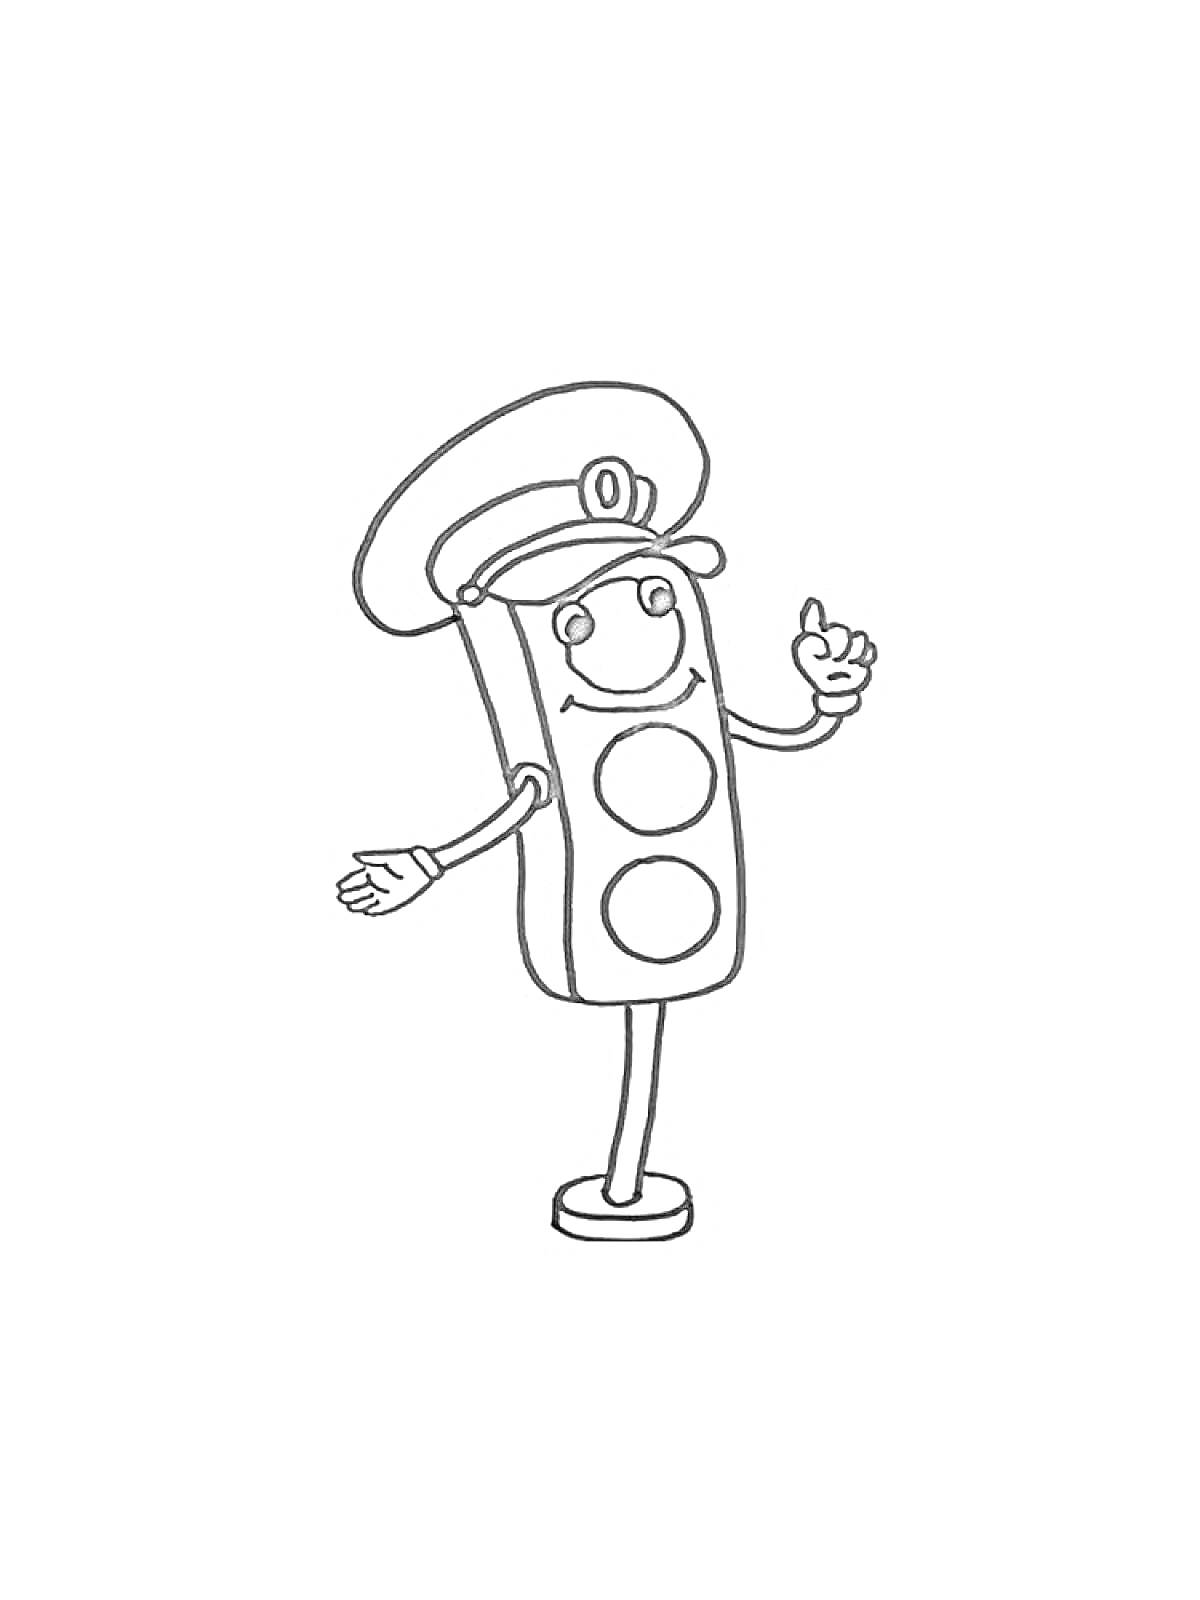 Раскраска Светофор в форме сотрудника дорожной полиции с лицом, руками и ногами